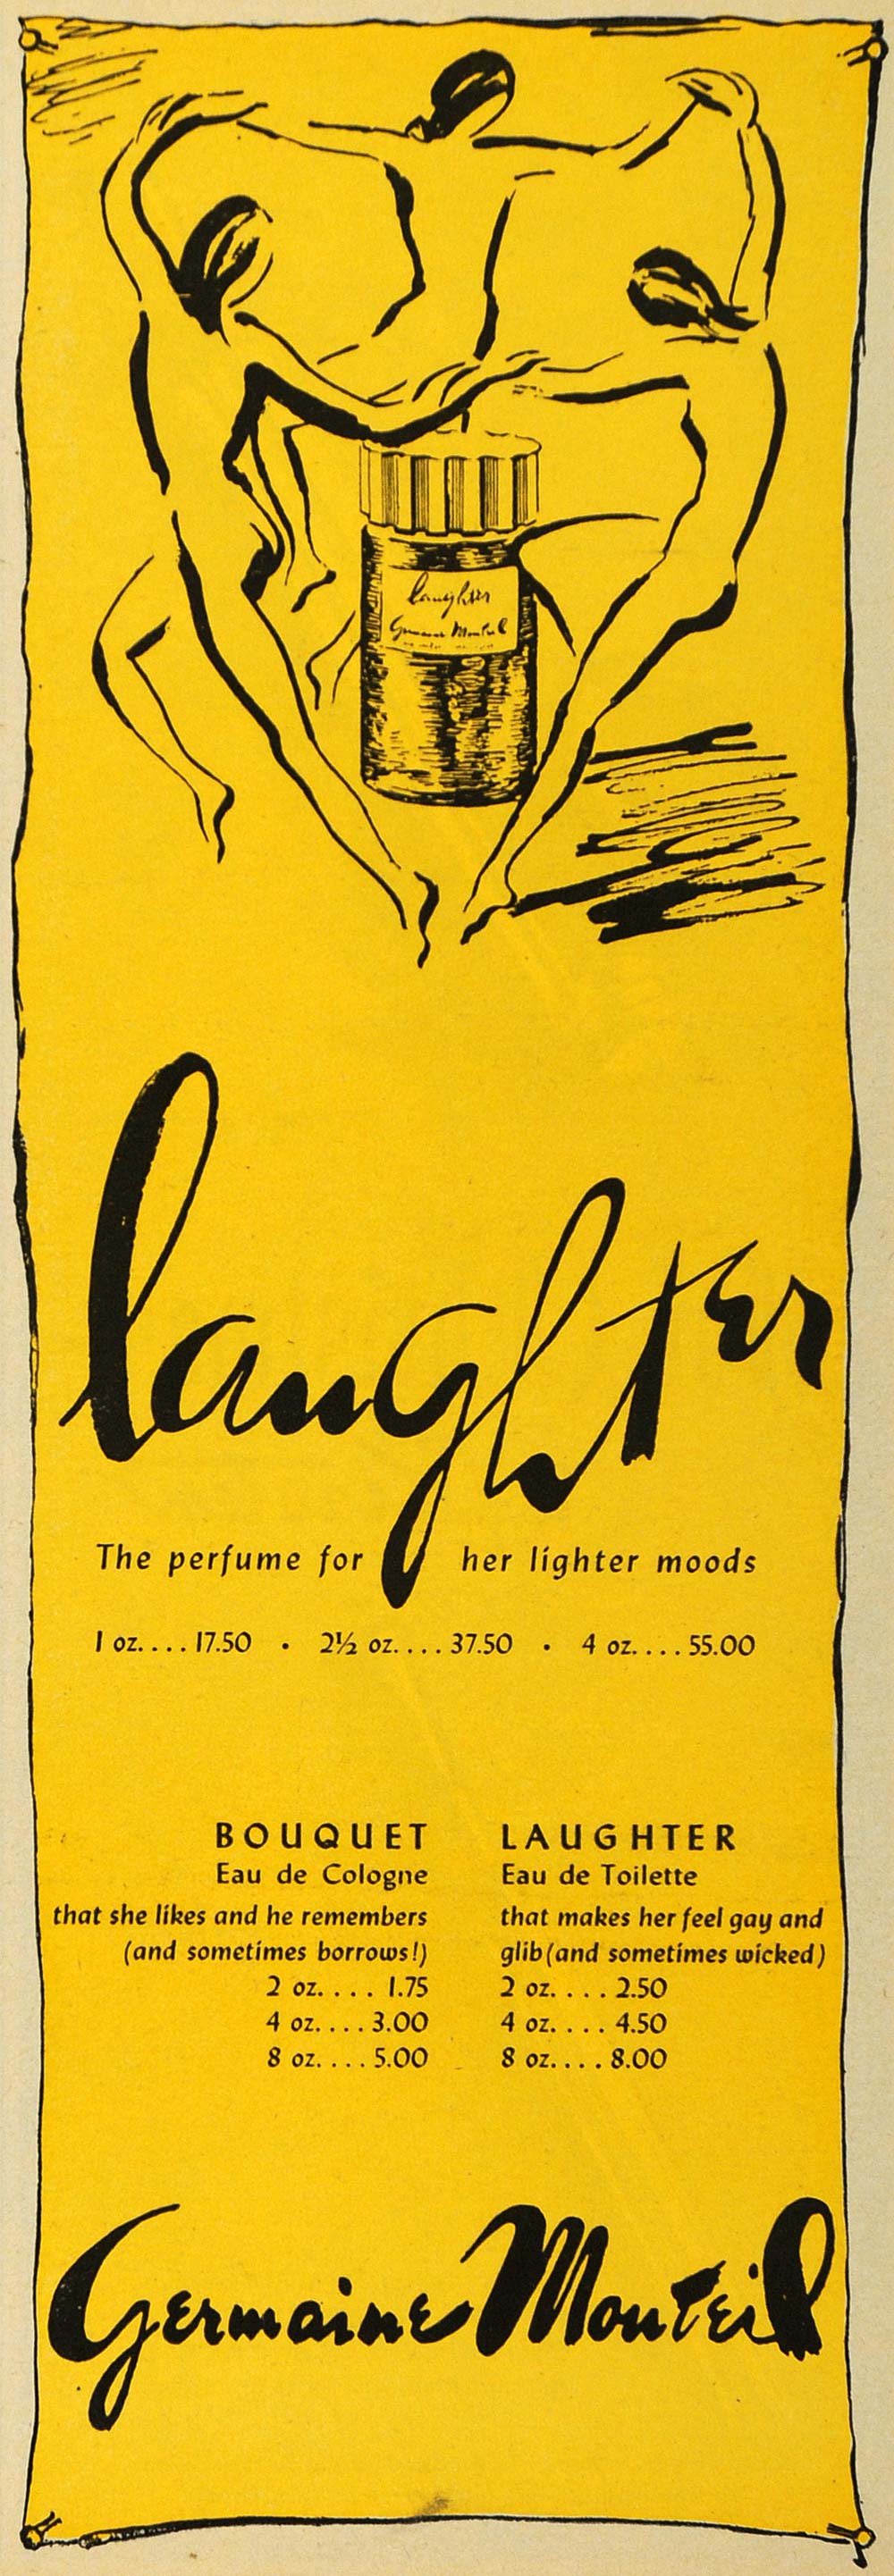 1947 Ad Germaine Monteil Laughter Perfume Fragrance - ORIGINAL ADVERTISING ESQ4